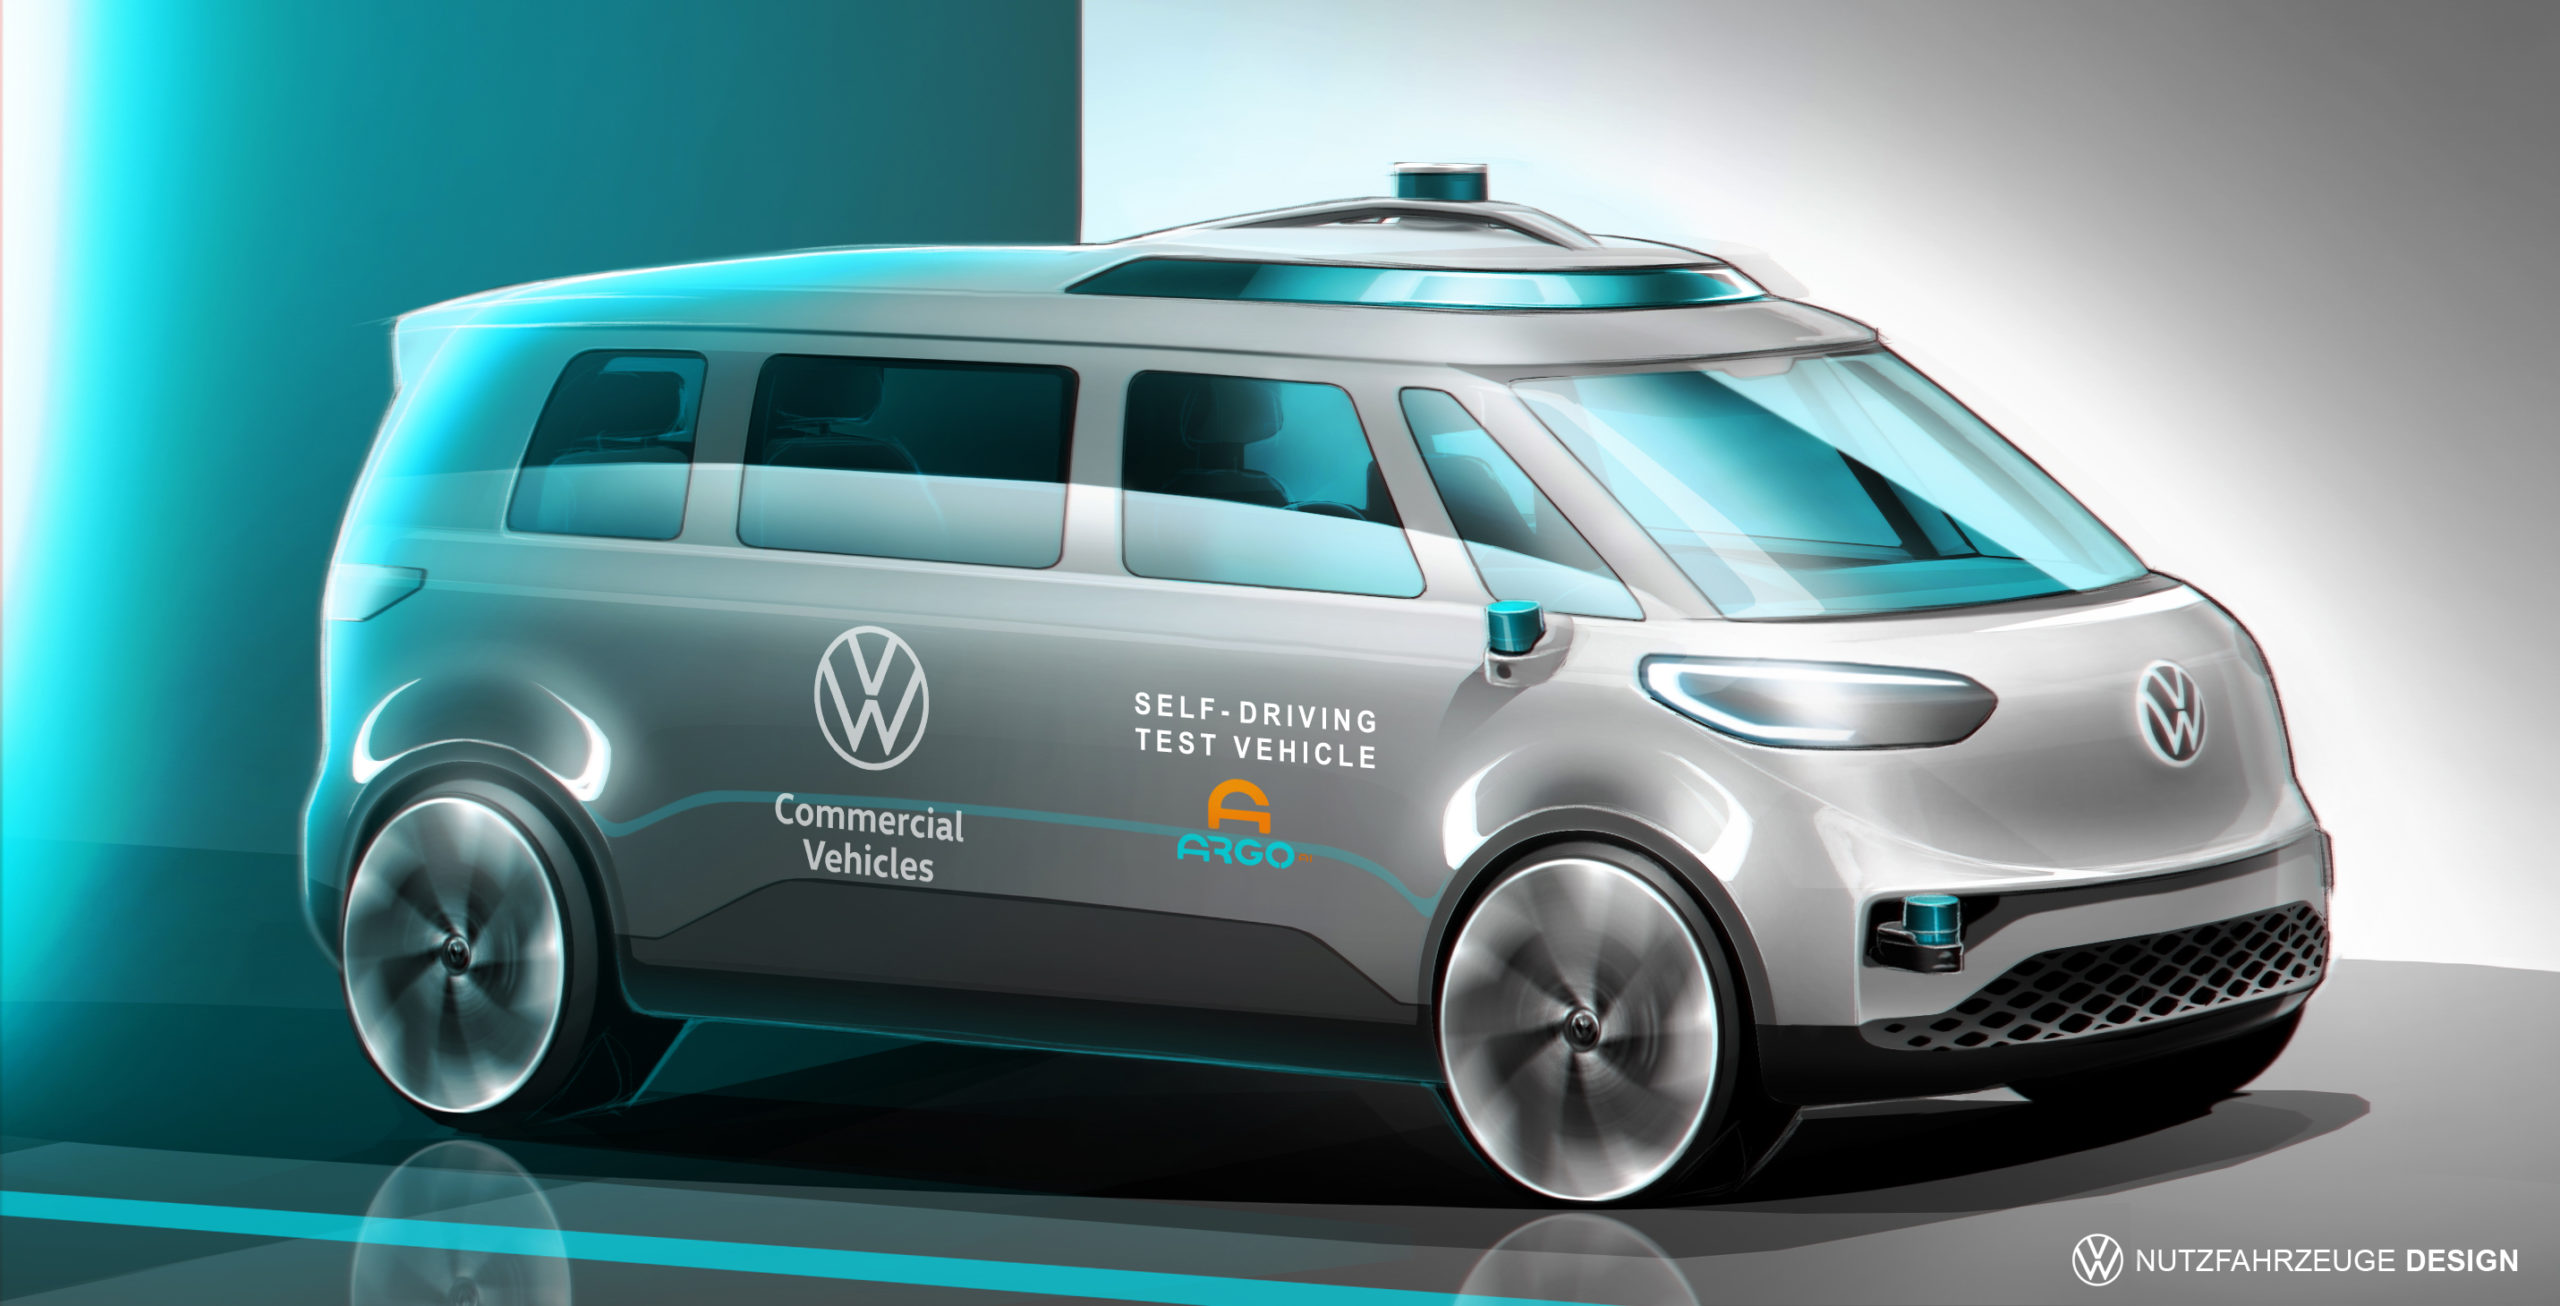 VW Commercial Vehicles va de l'avant avec la conduite autonome